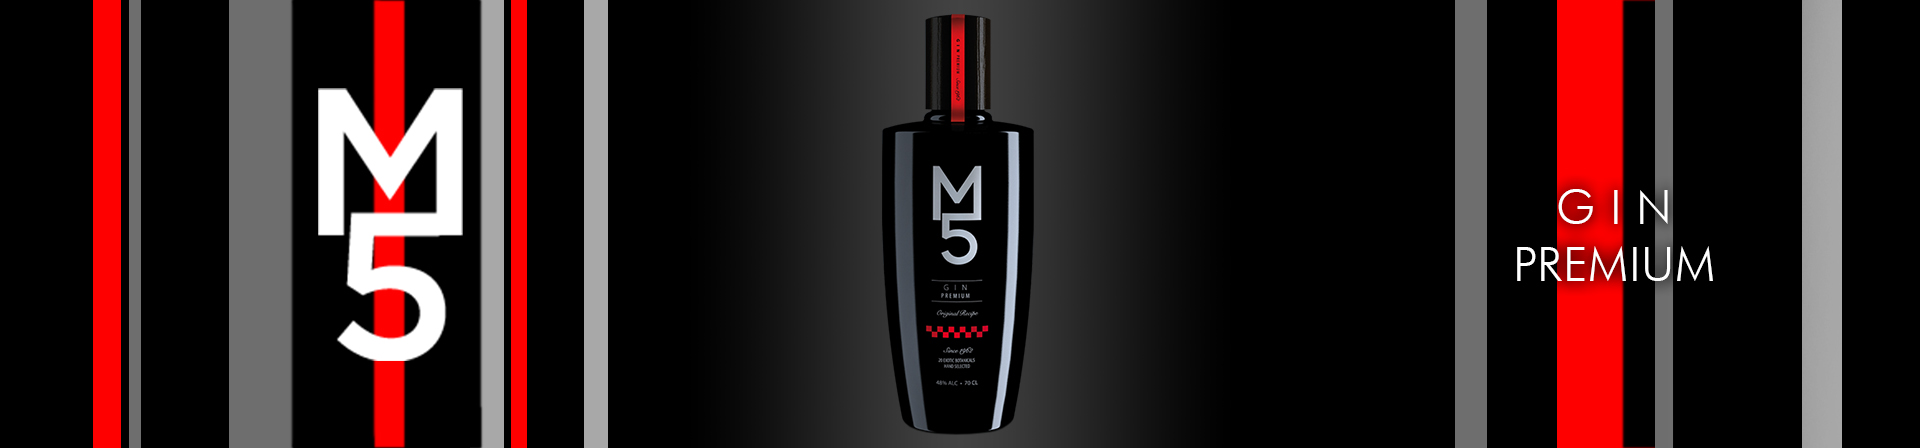 M5 Gin Premium